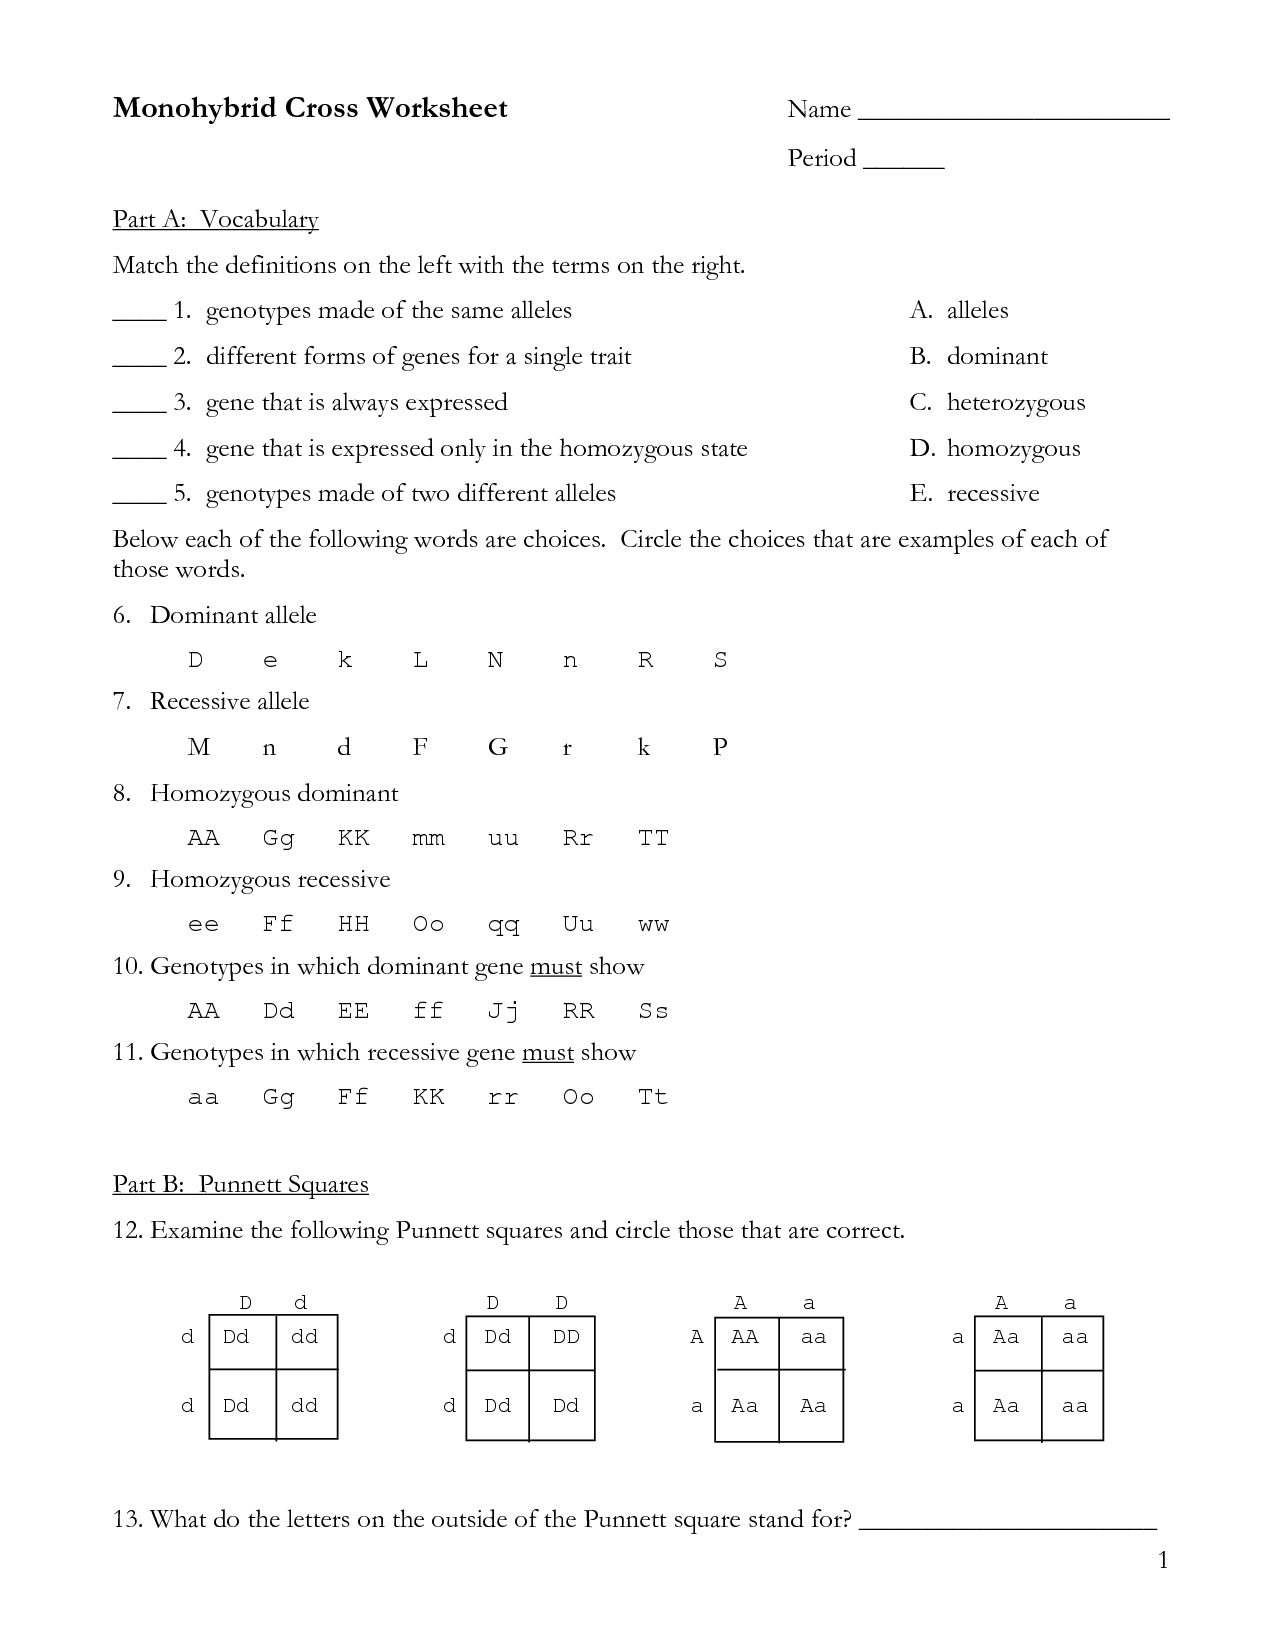 30 Monohybrid Punnett Square Practice Worksheet Answers ...